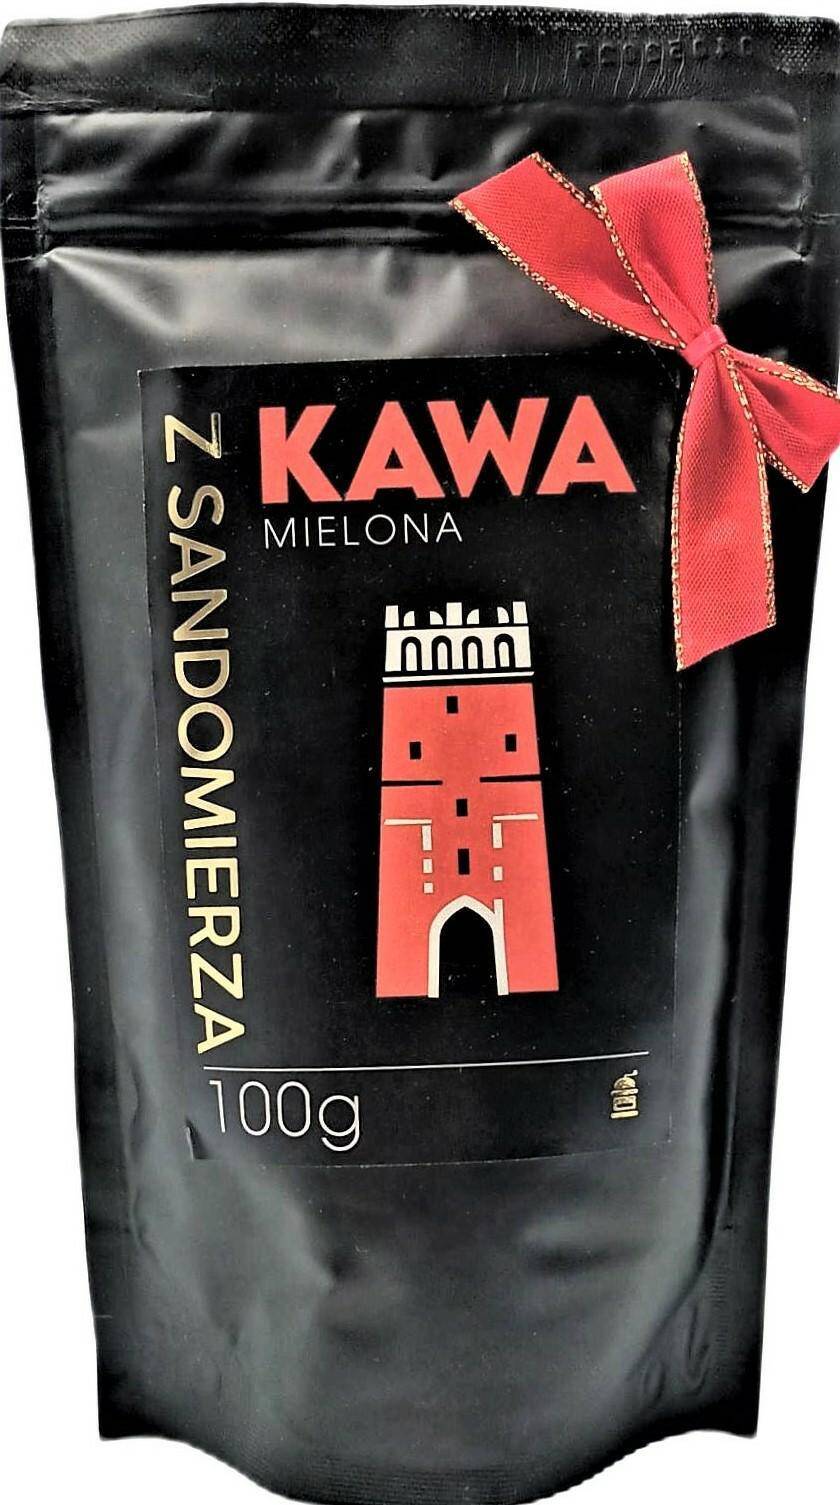 Kawa mielona Etiopia Premium 100g /100%